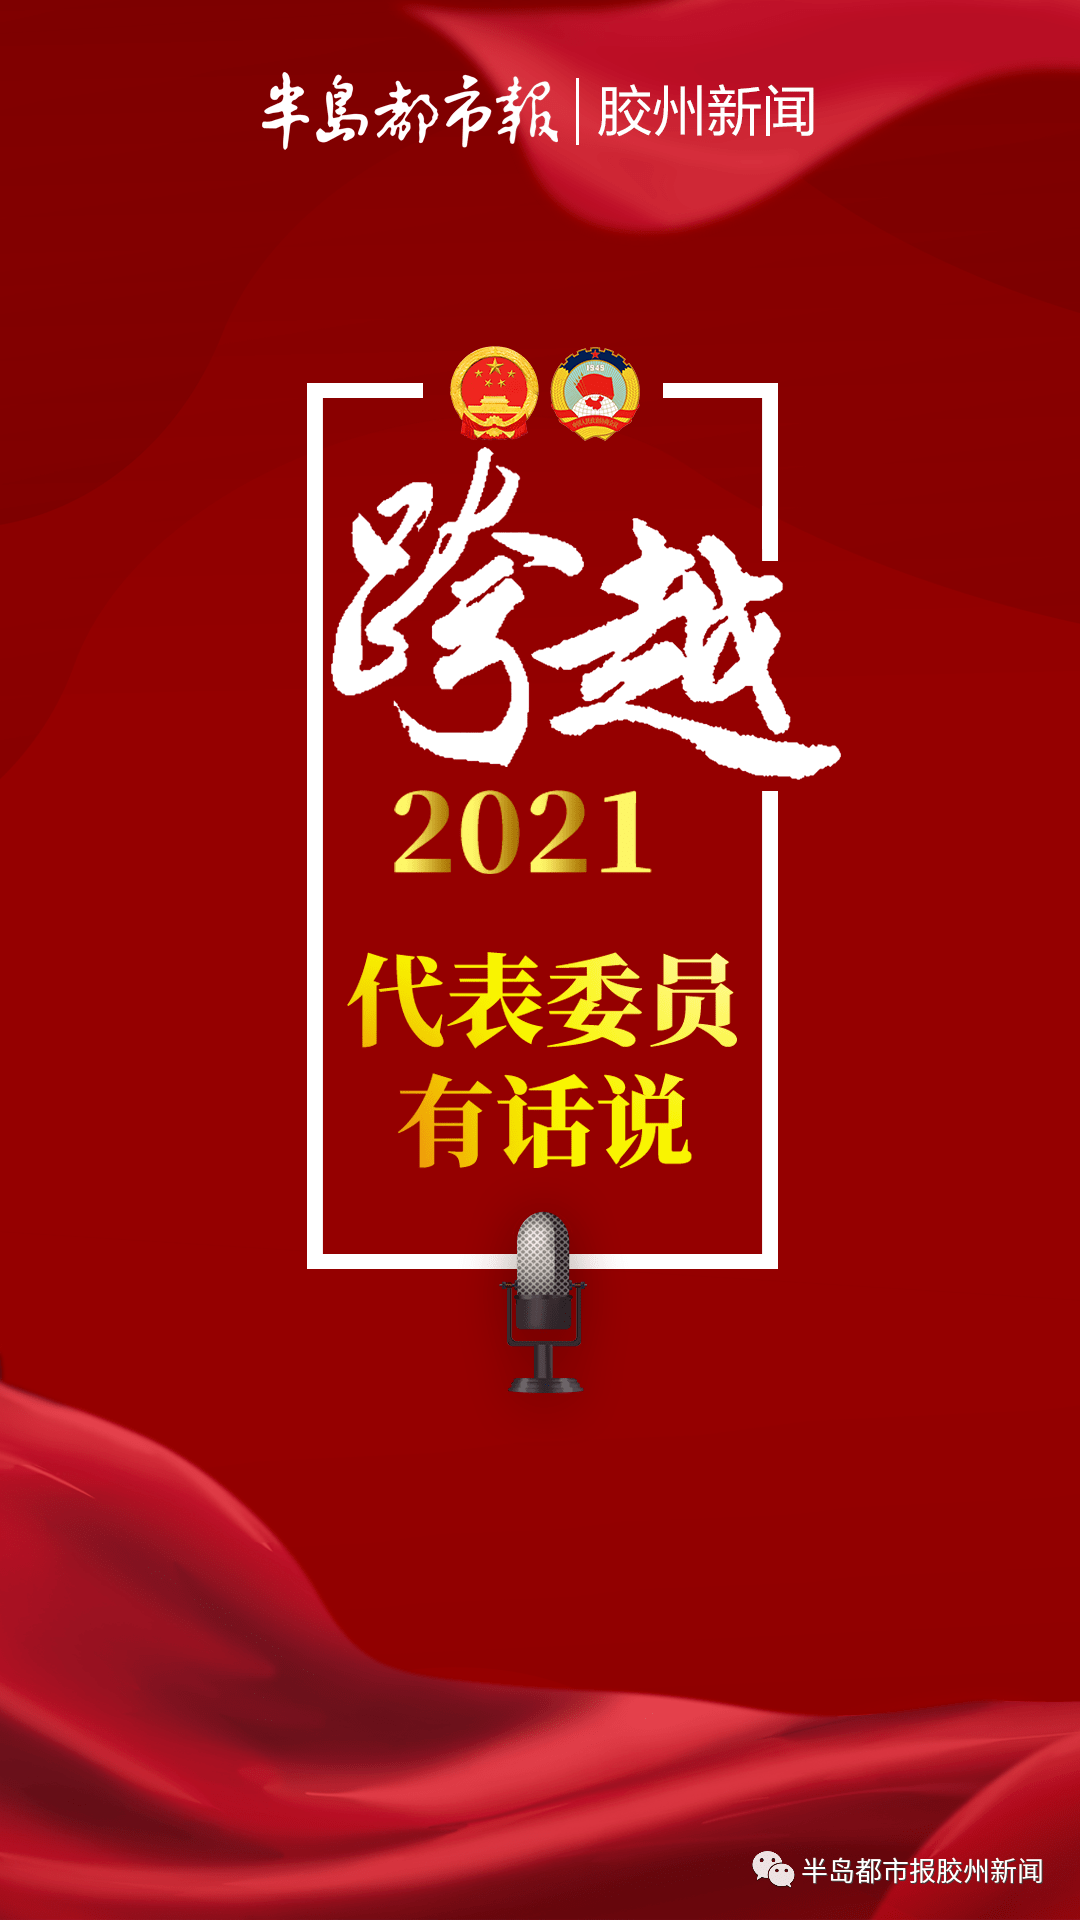 跨越2021!胶州代表委员有话说(上)